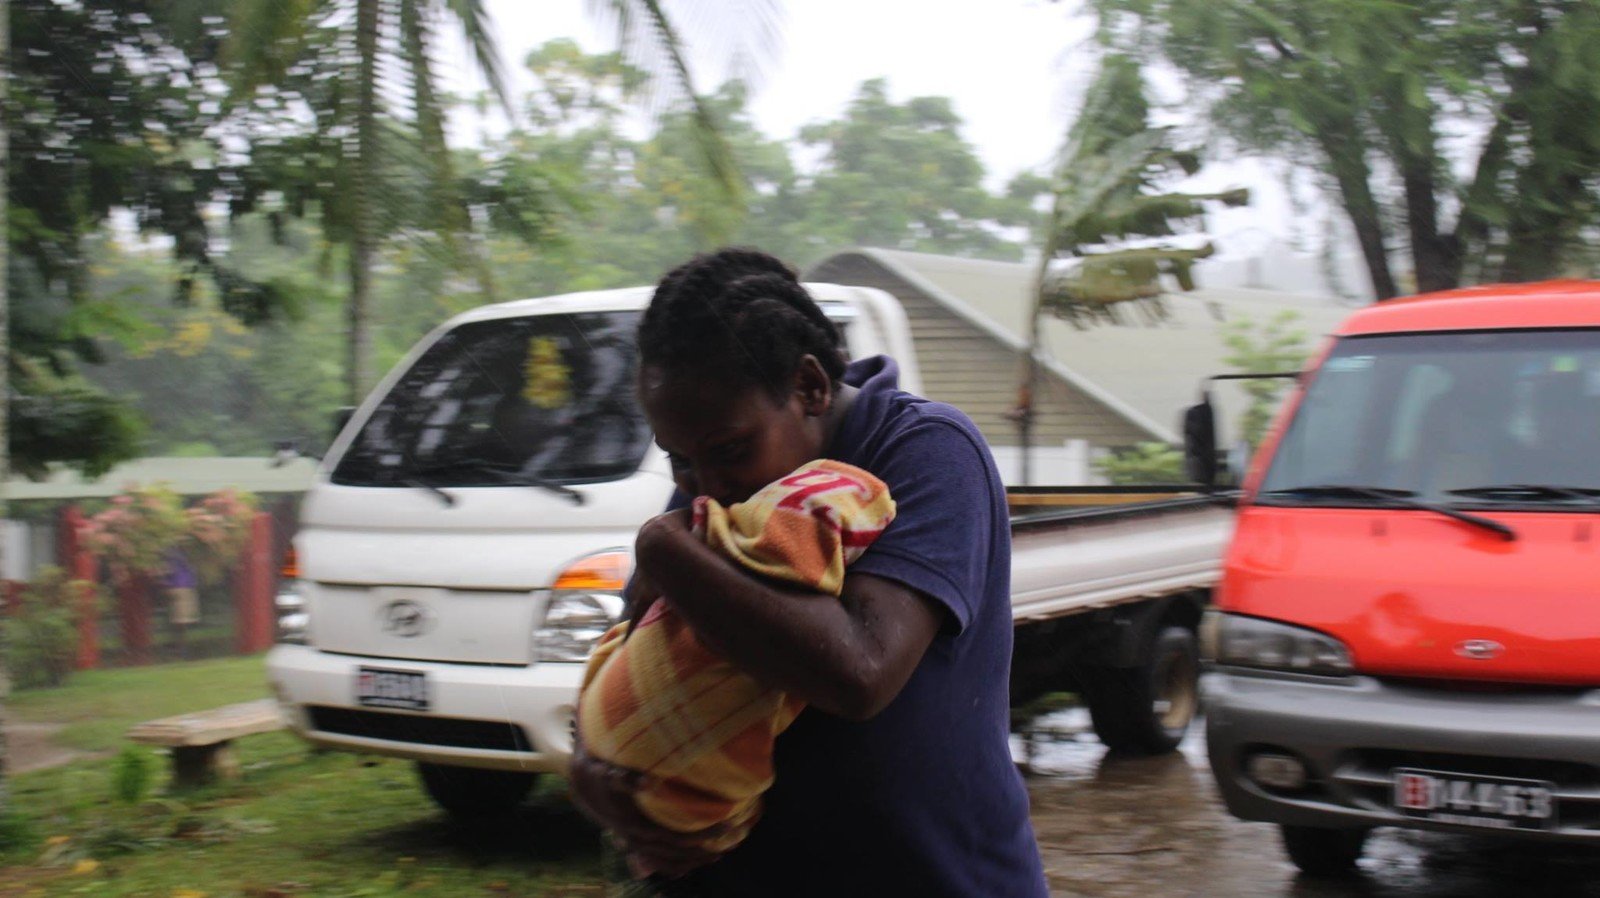 「帕姆」(Pam) 正面吹襲南太平洋島國瓦努阿圖，導致全國超過25萬人受到嚴重影響。 (IssoNihmei/350.org)